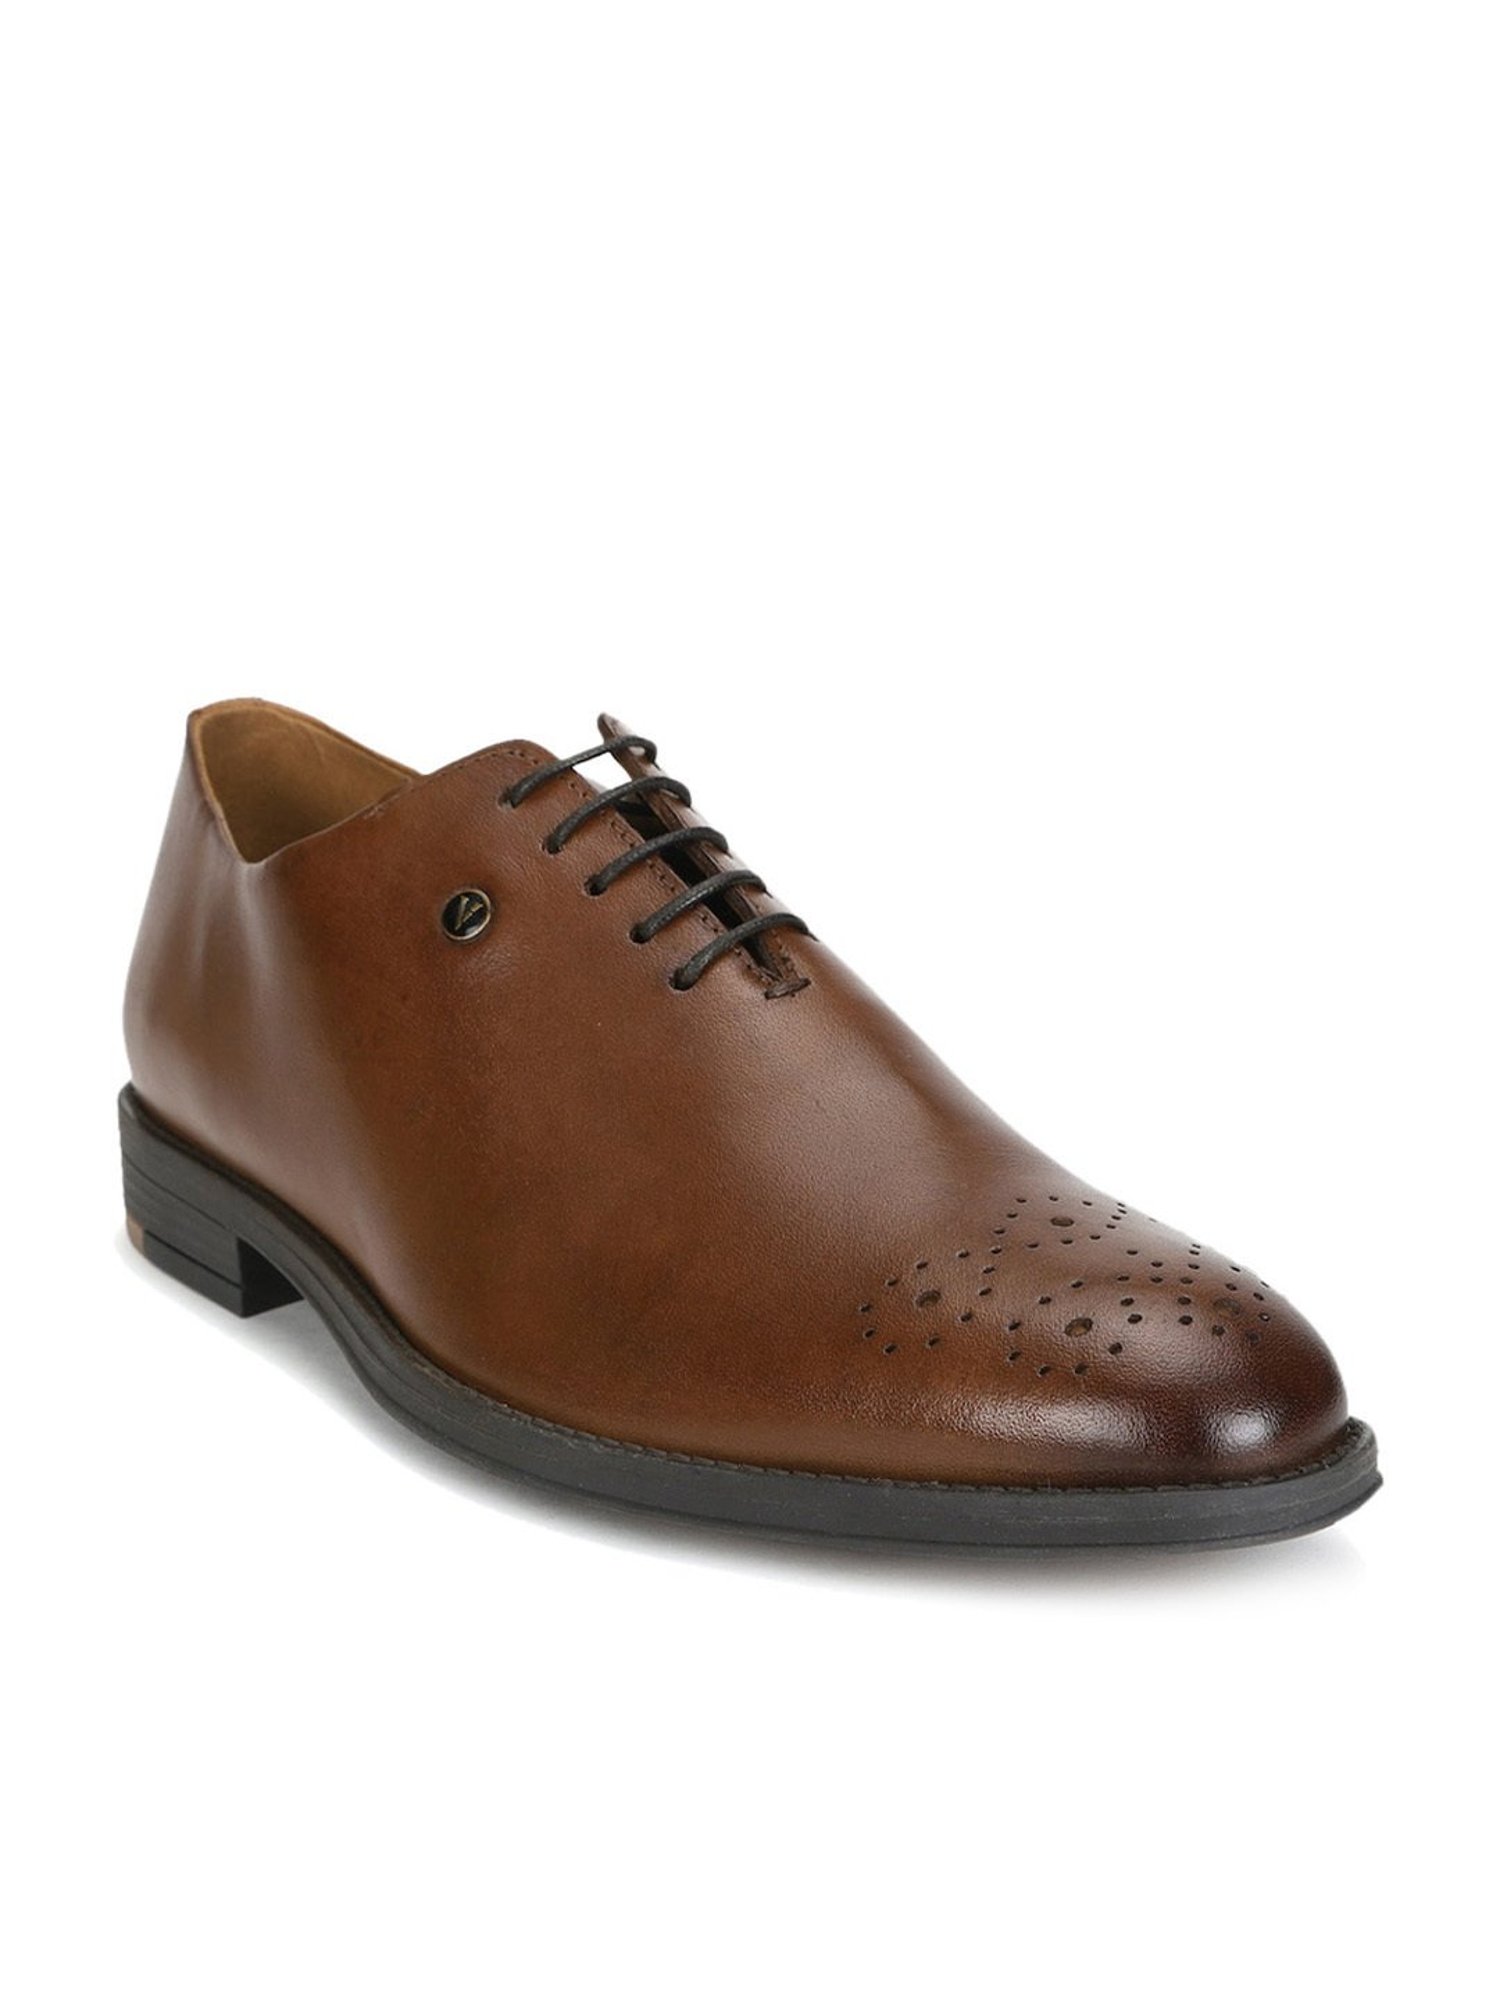 Van Heusen Men's Brown Oxford Shoes